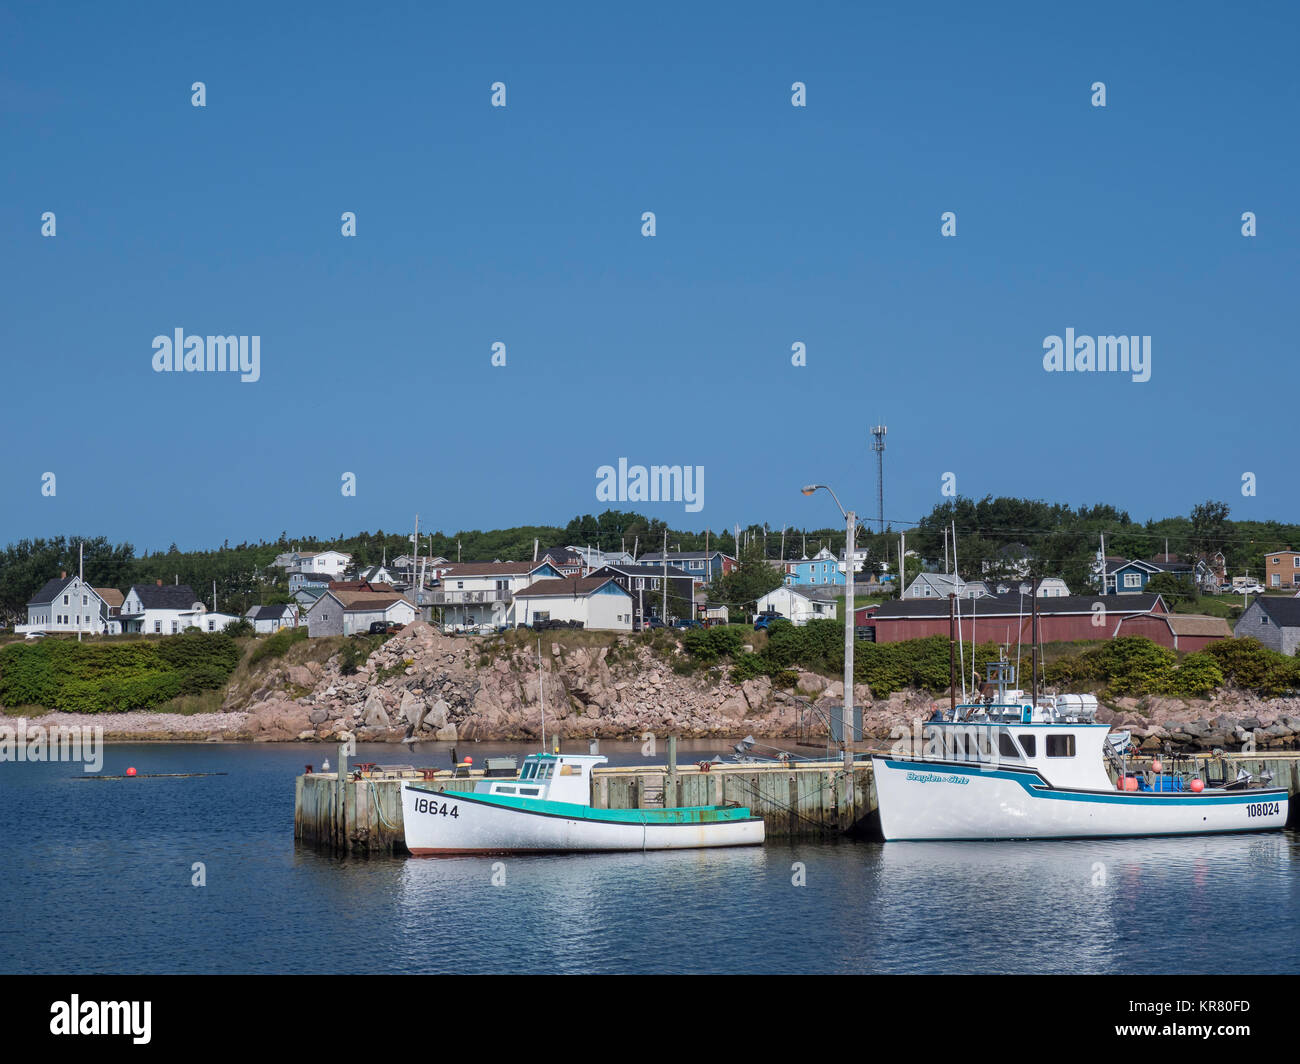 Bateaux de pêche dans le port, Neil's Harbour, île du Cap-Breton, Nouvelle-Écosse, Canada. Banque D'Images